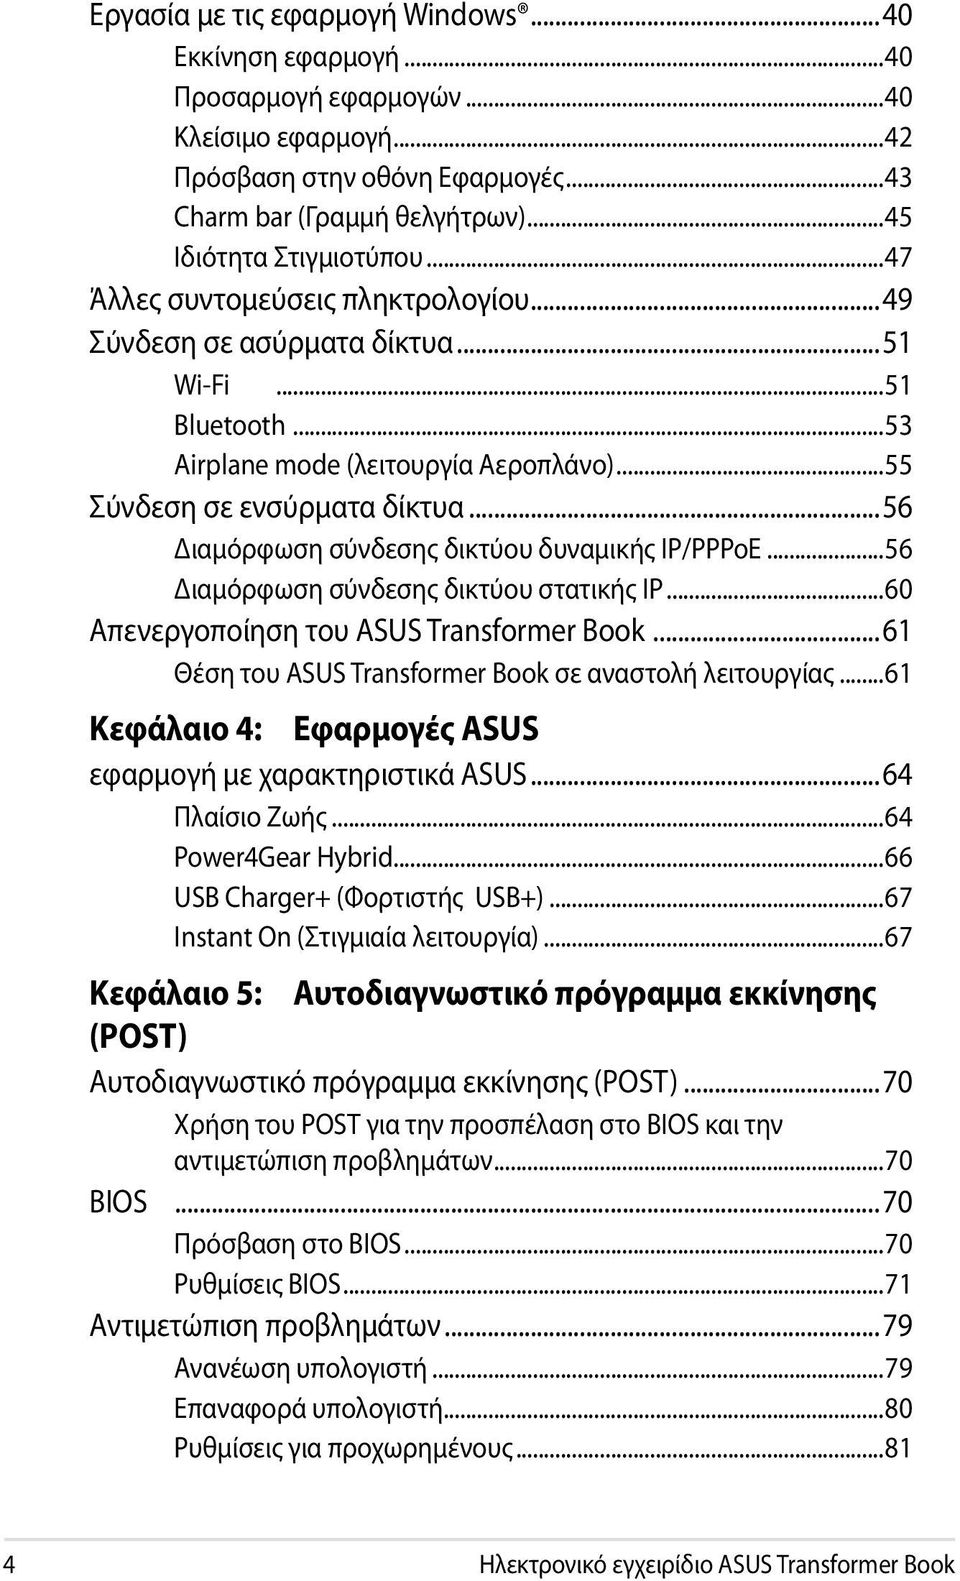 ..56 Διαμόρφωση σύνδεσης δικτύου δυναμικής IP/PPPoE...56 Διαμόρφωση σύνδεσης δικτύου στατικής IP...60 Απενεργοποίηση του ASUS Transformer Book.